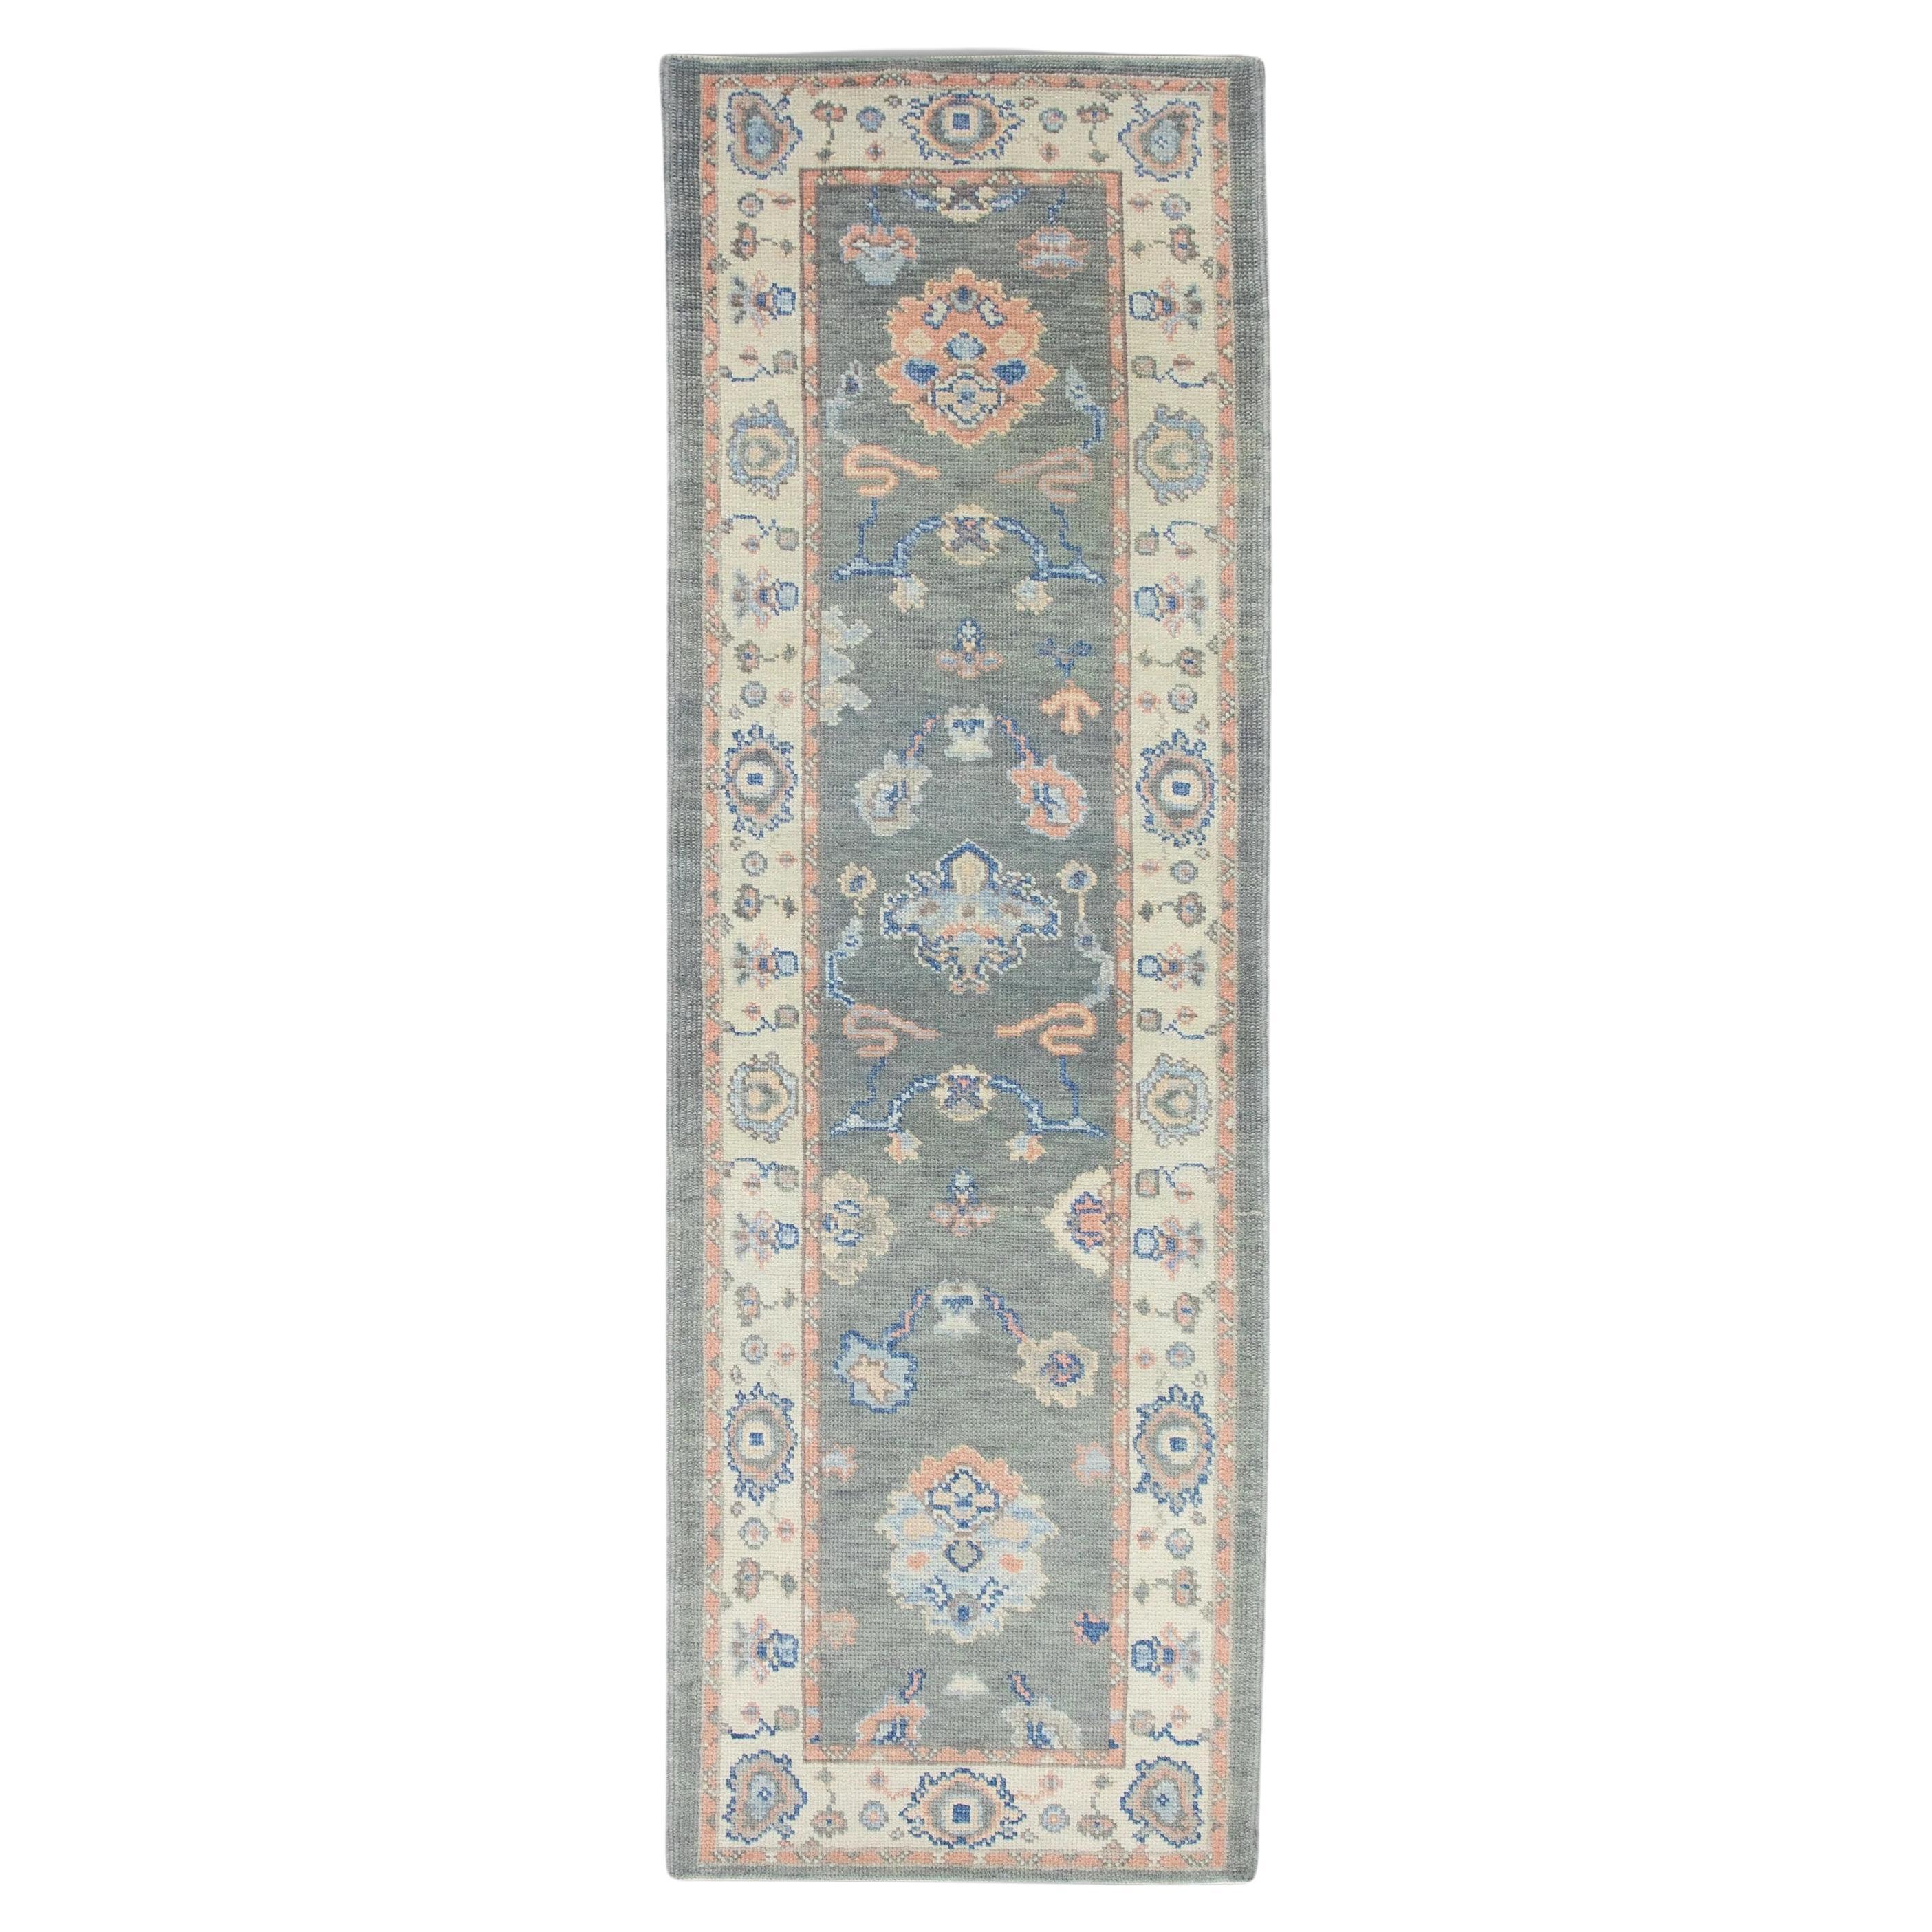 Türkischer Oushak-Teppich aus handgewebter Wolle in Grau mit rosa und blauem Blumenmuster 2'7" x 7'11"